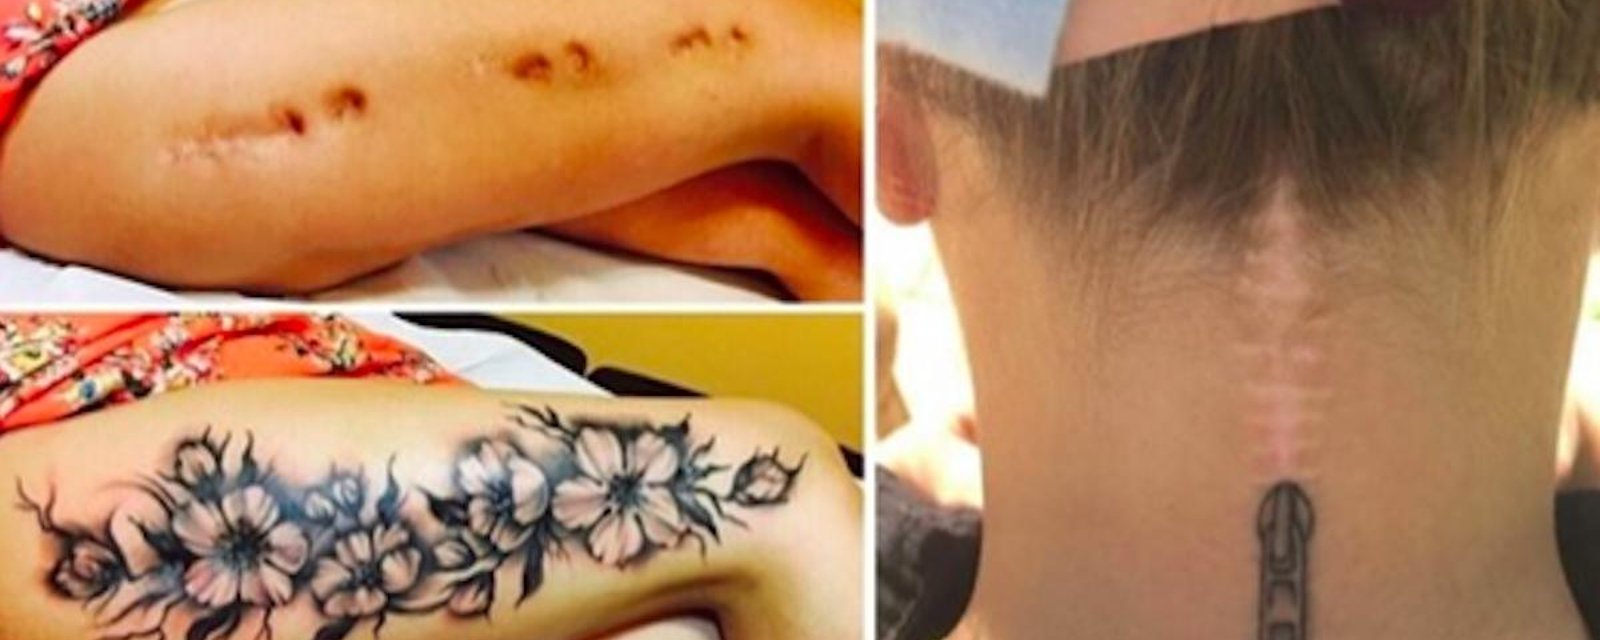 Des tatoueurs transforment des cicatrices en de véritables oeuvres d’art